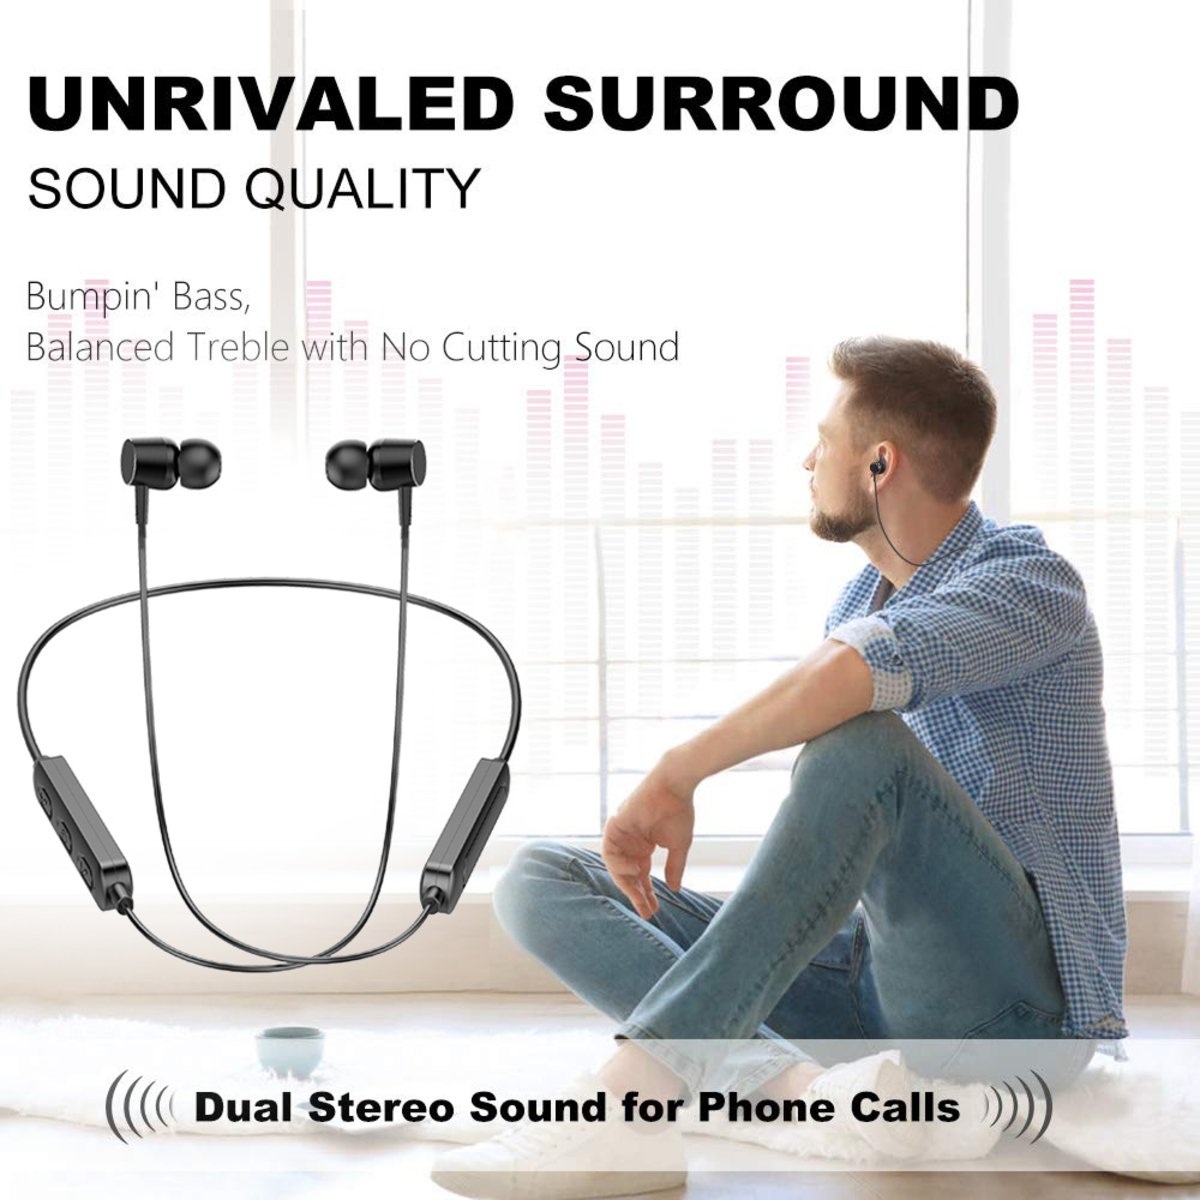 Iends Bluetooth Wireless Extra Bass in-Ear Headphones BT369